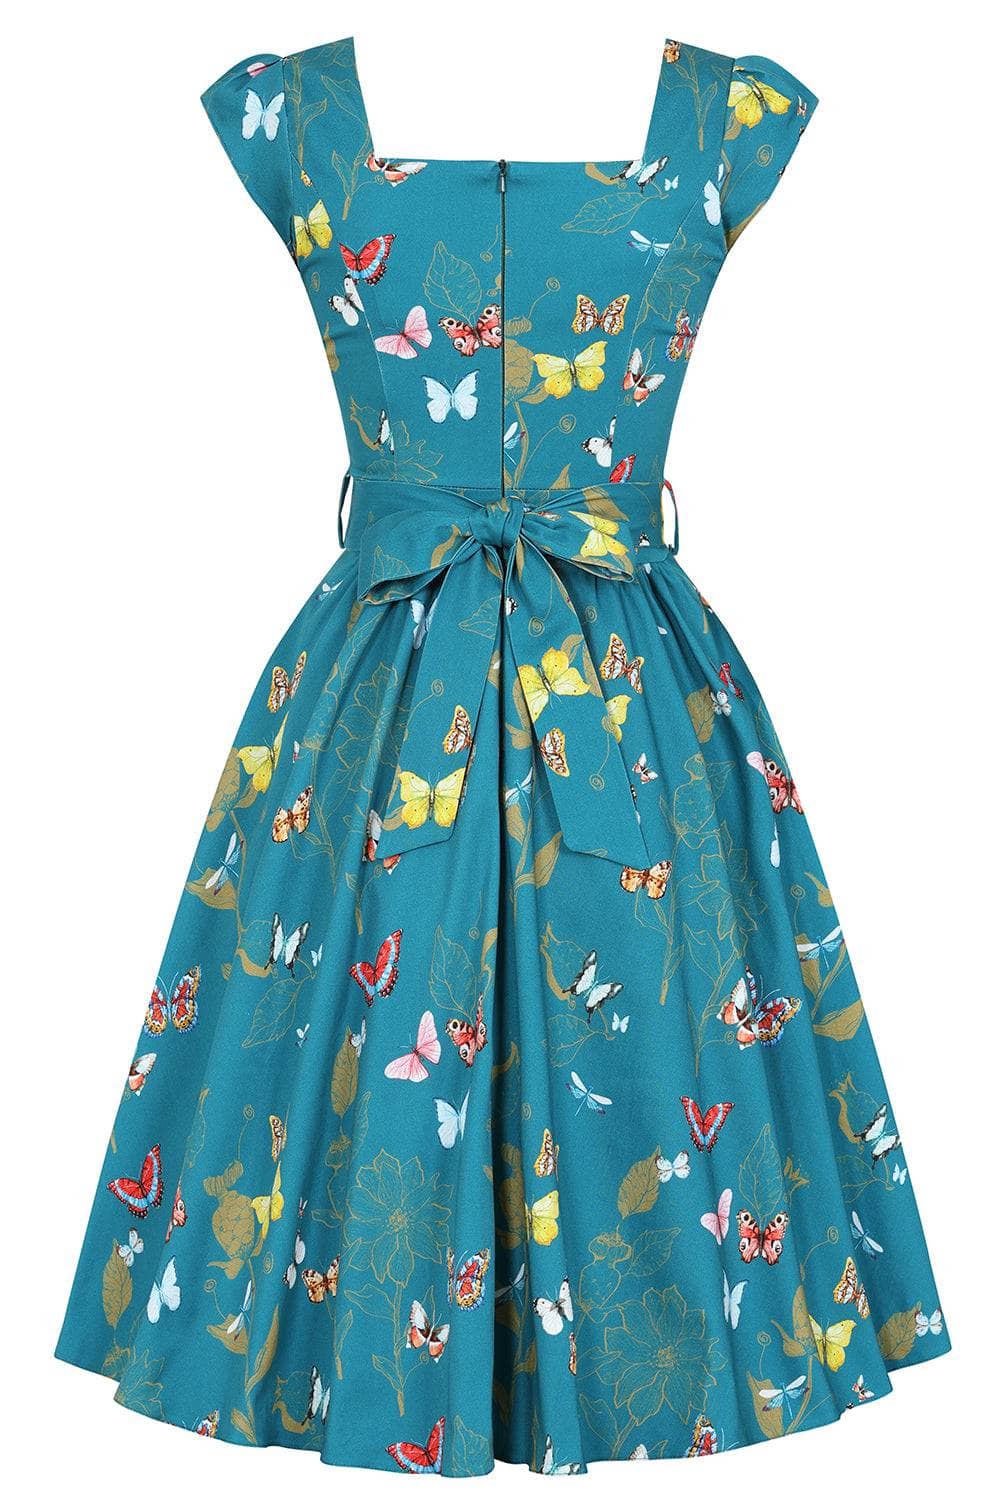 Swing Dress - Teal Butterfly Lady Vintage Swing Dresses